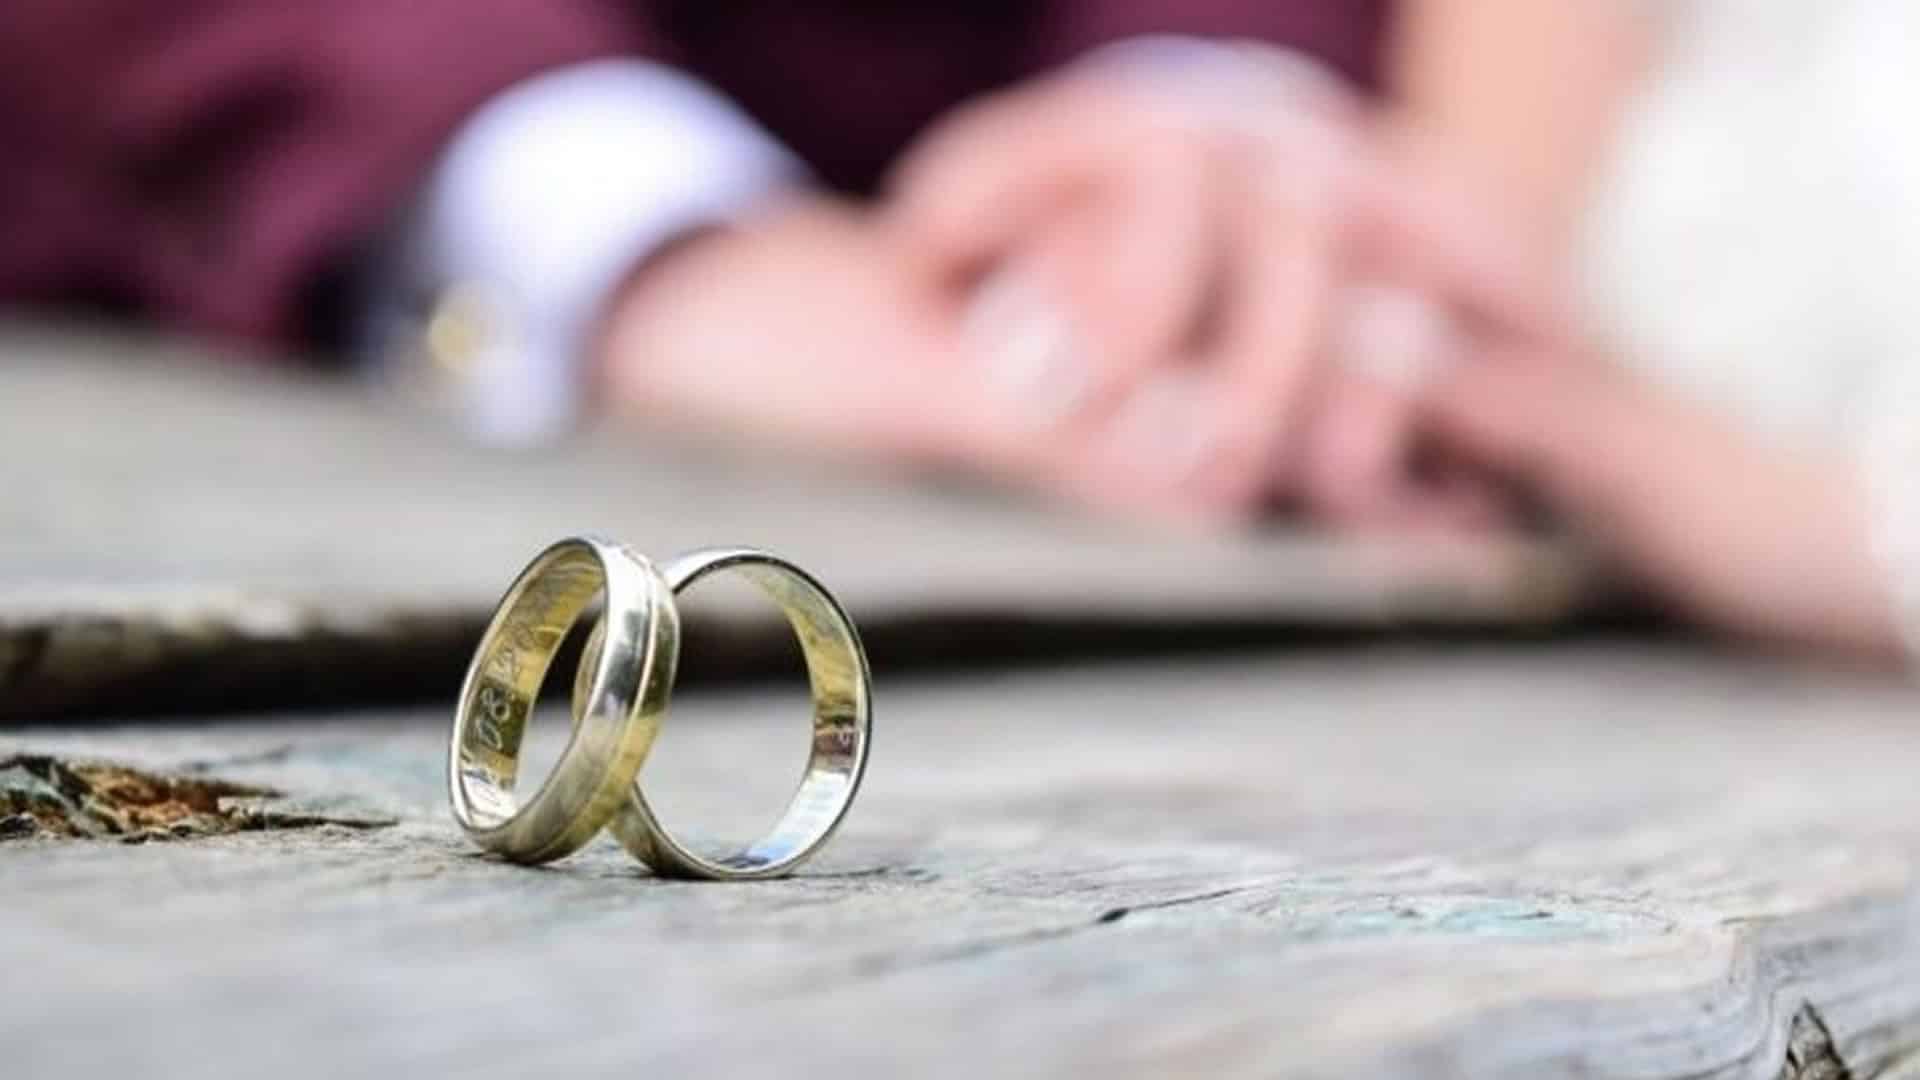 5 causas por las que se puede declarar nulidad matrimonial